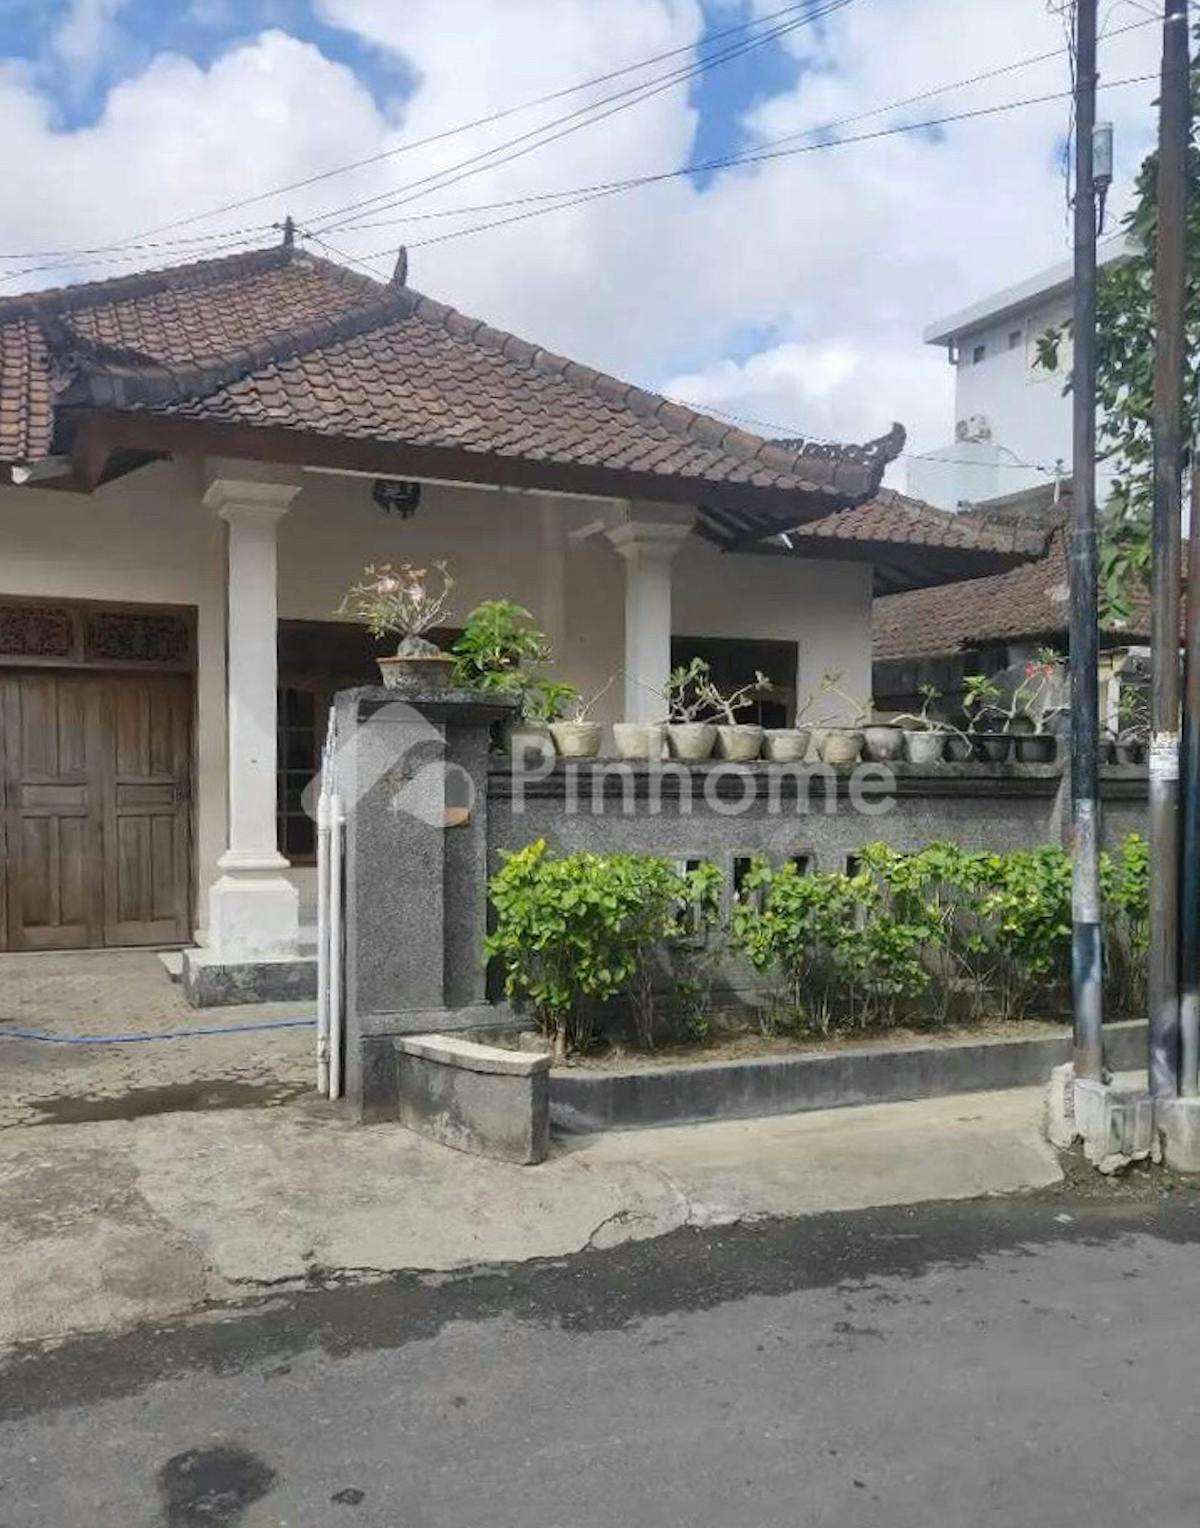 Disewakan Rumah Lokasi Strategis di Renon, Denpasar, Bali - Gambar 1